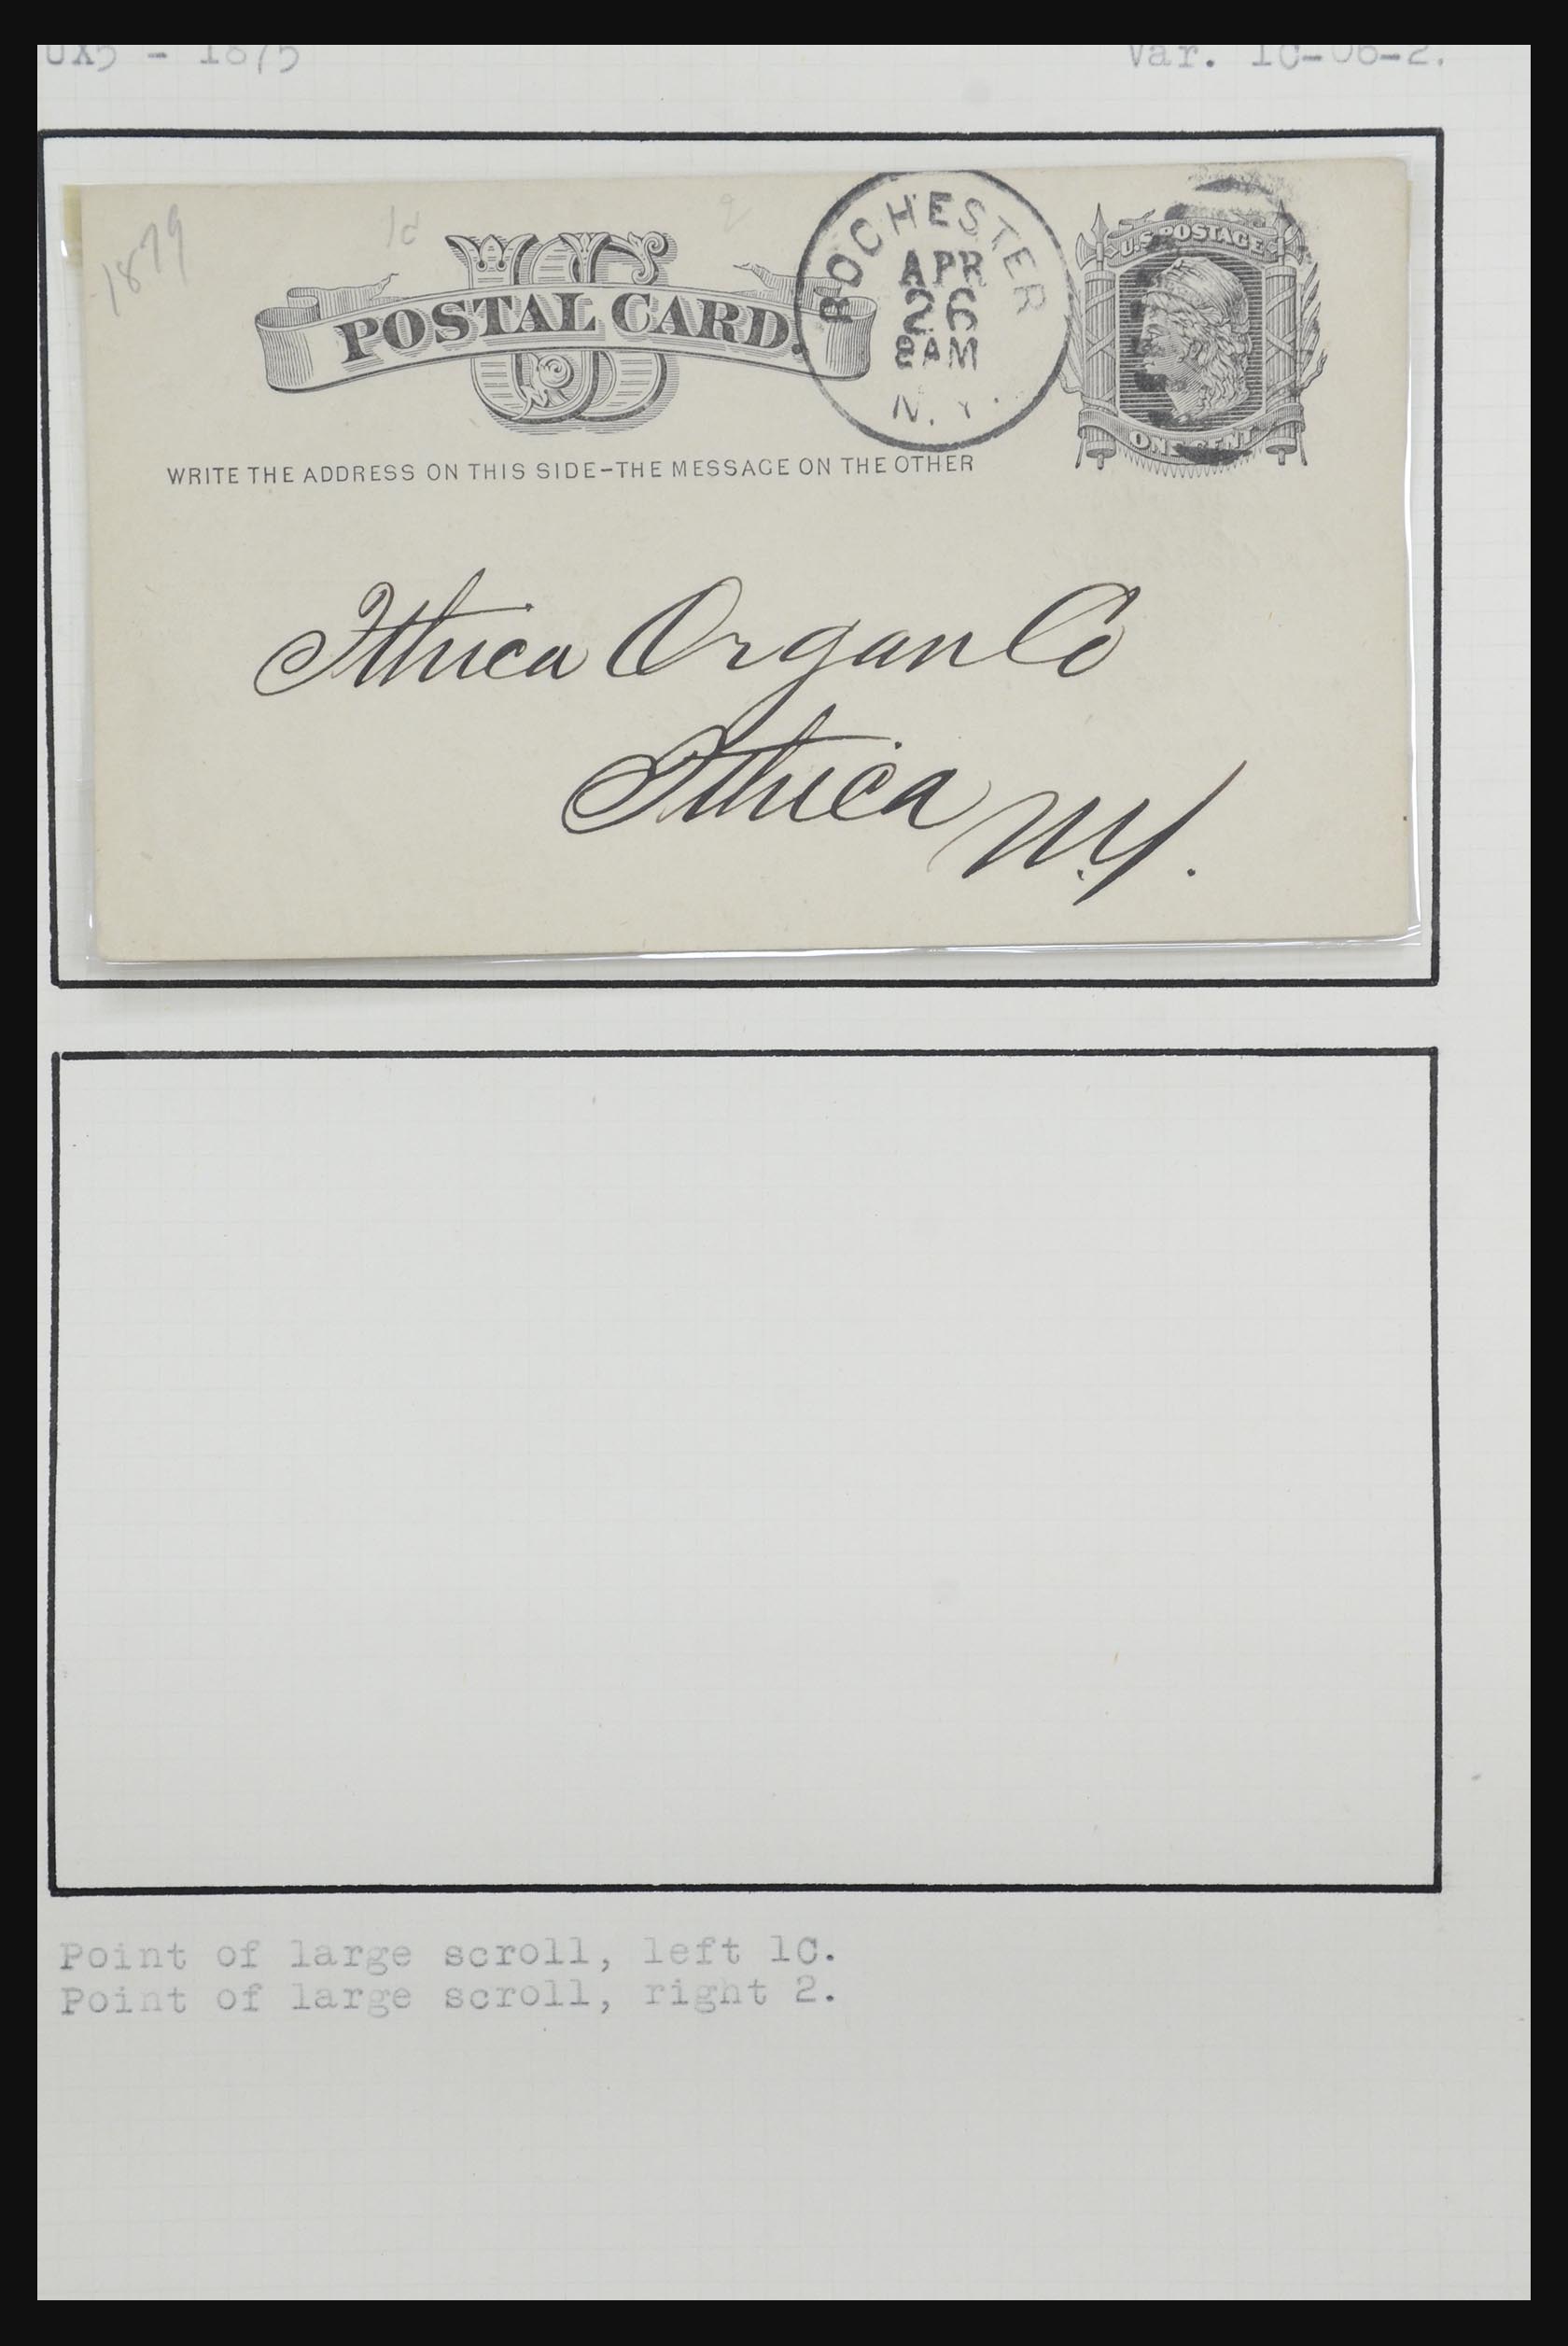 32209 055 - 32209 USA briefkaarten 1873-1950.